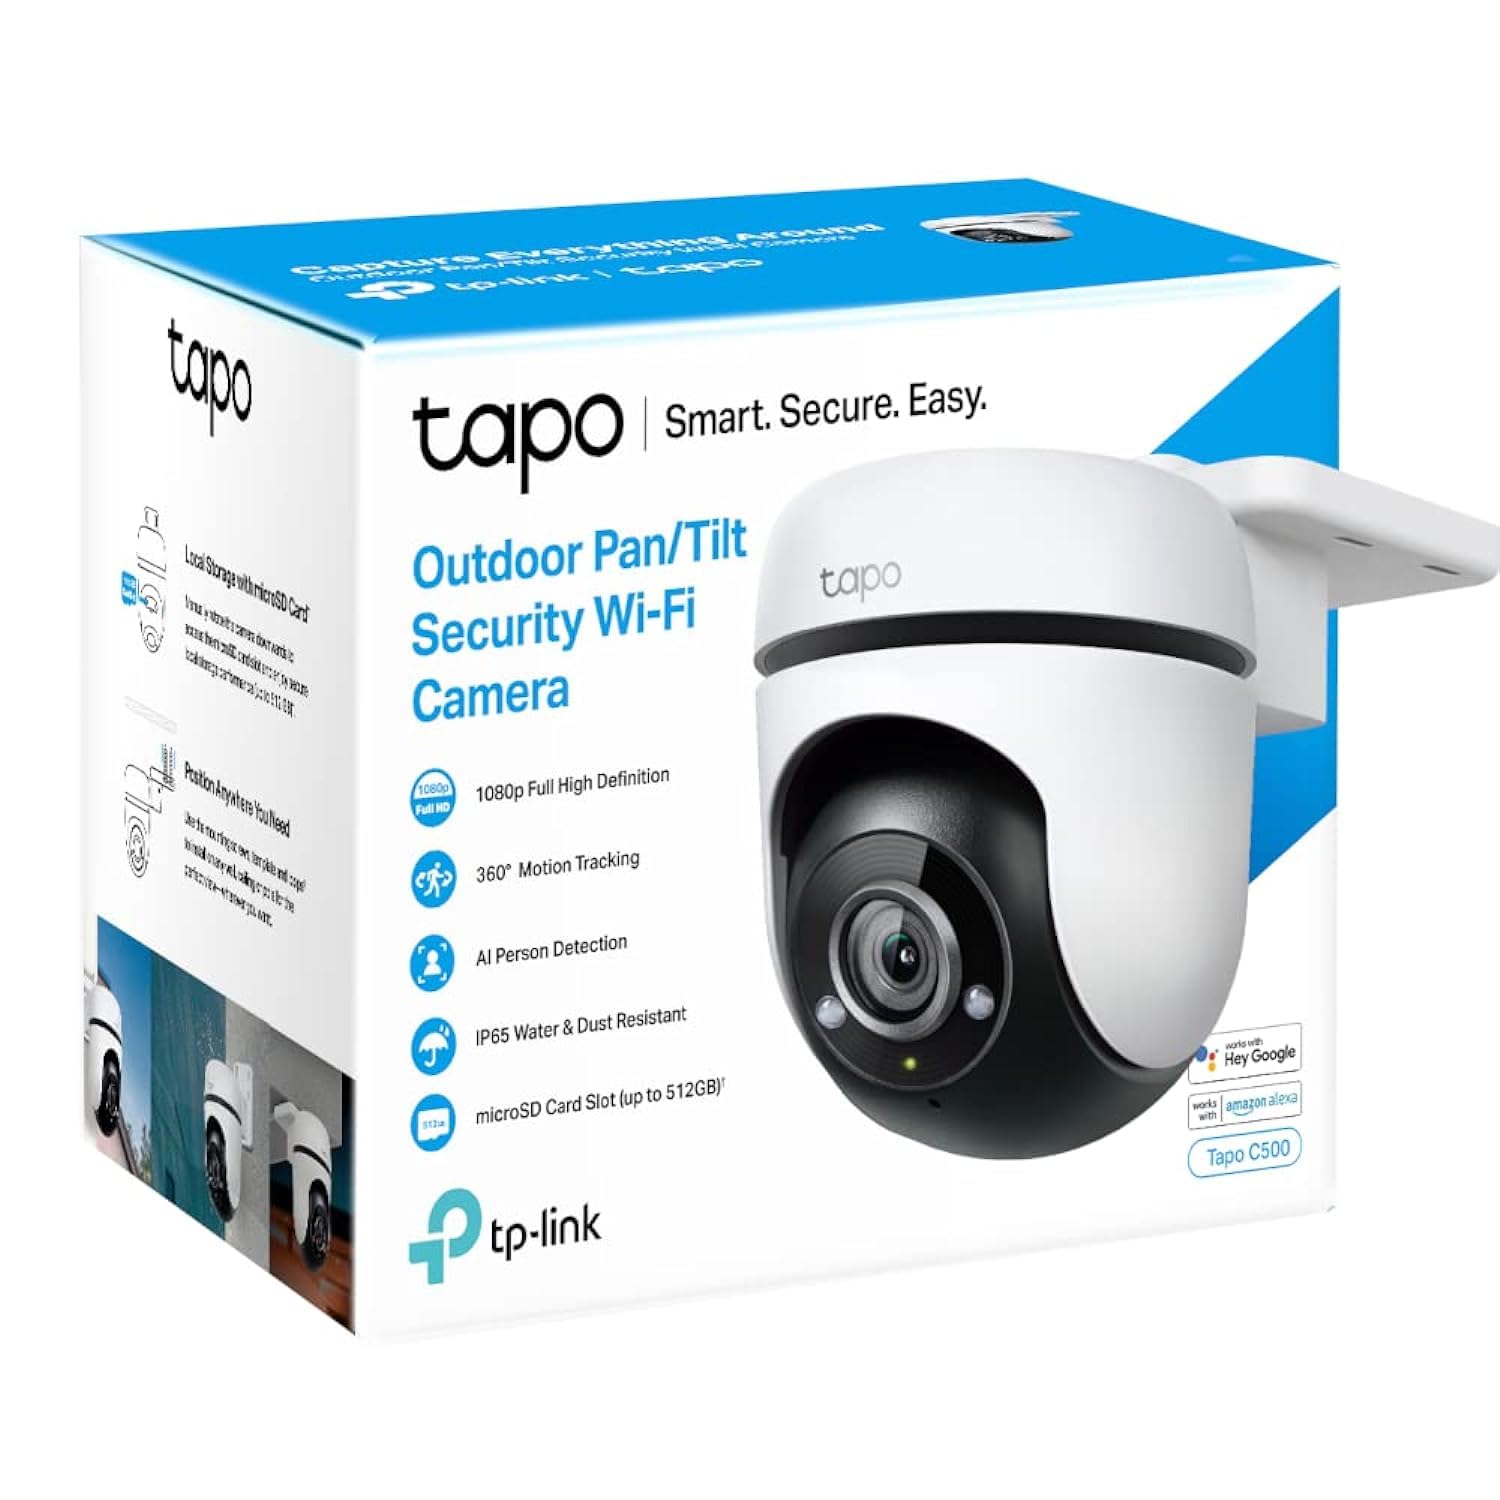 TP-Link cm Tapo C500 Outdoor Pan Tilt Security Wi-Fi Camera 1080p 2